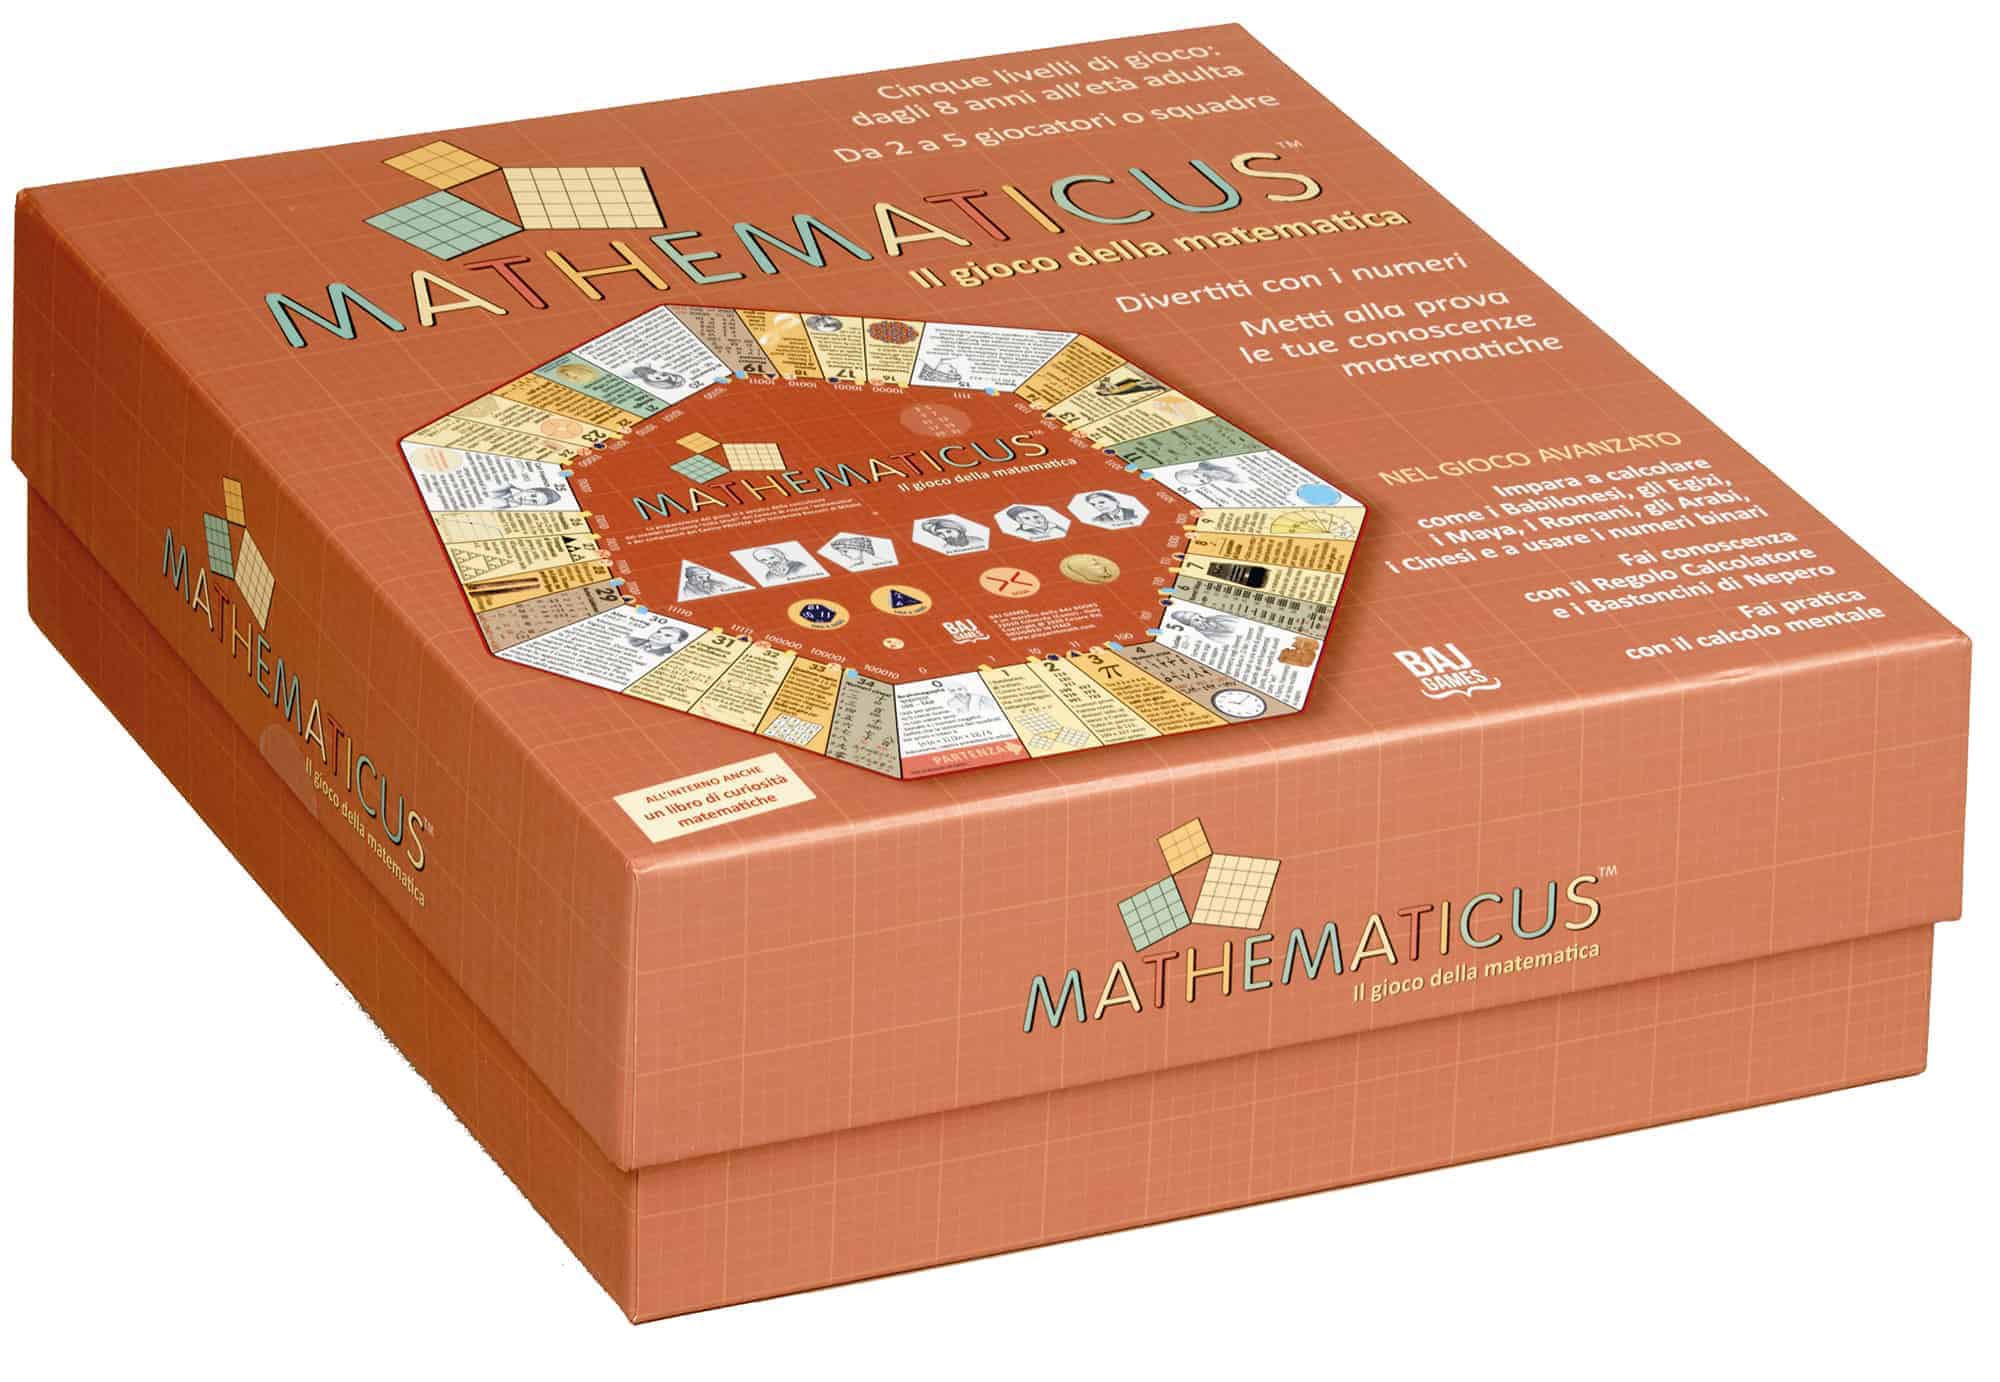 Scatola Mathematicus - Il gioco della matematica